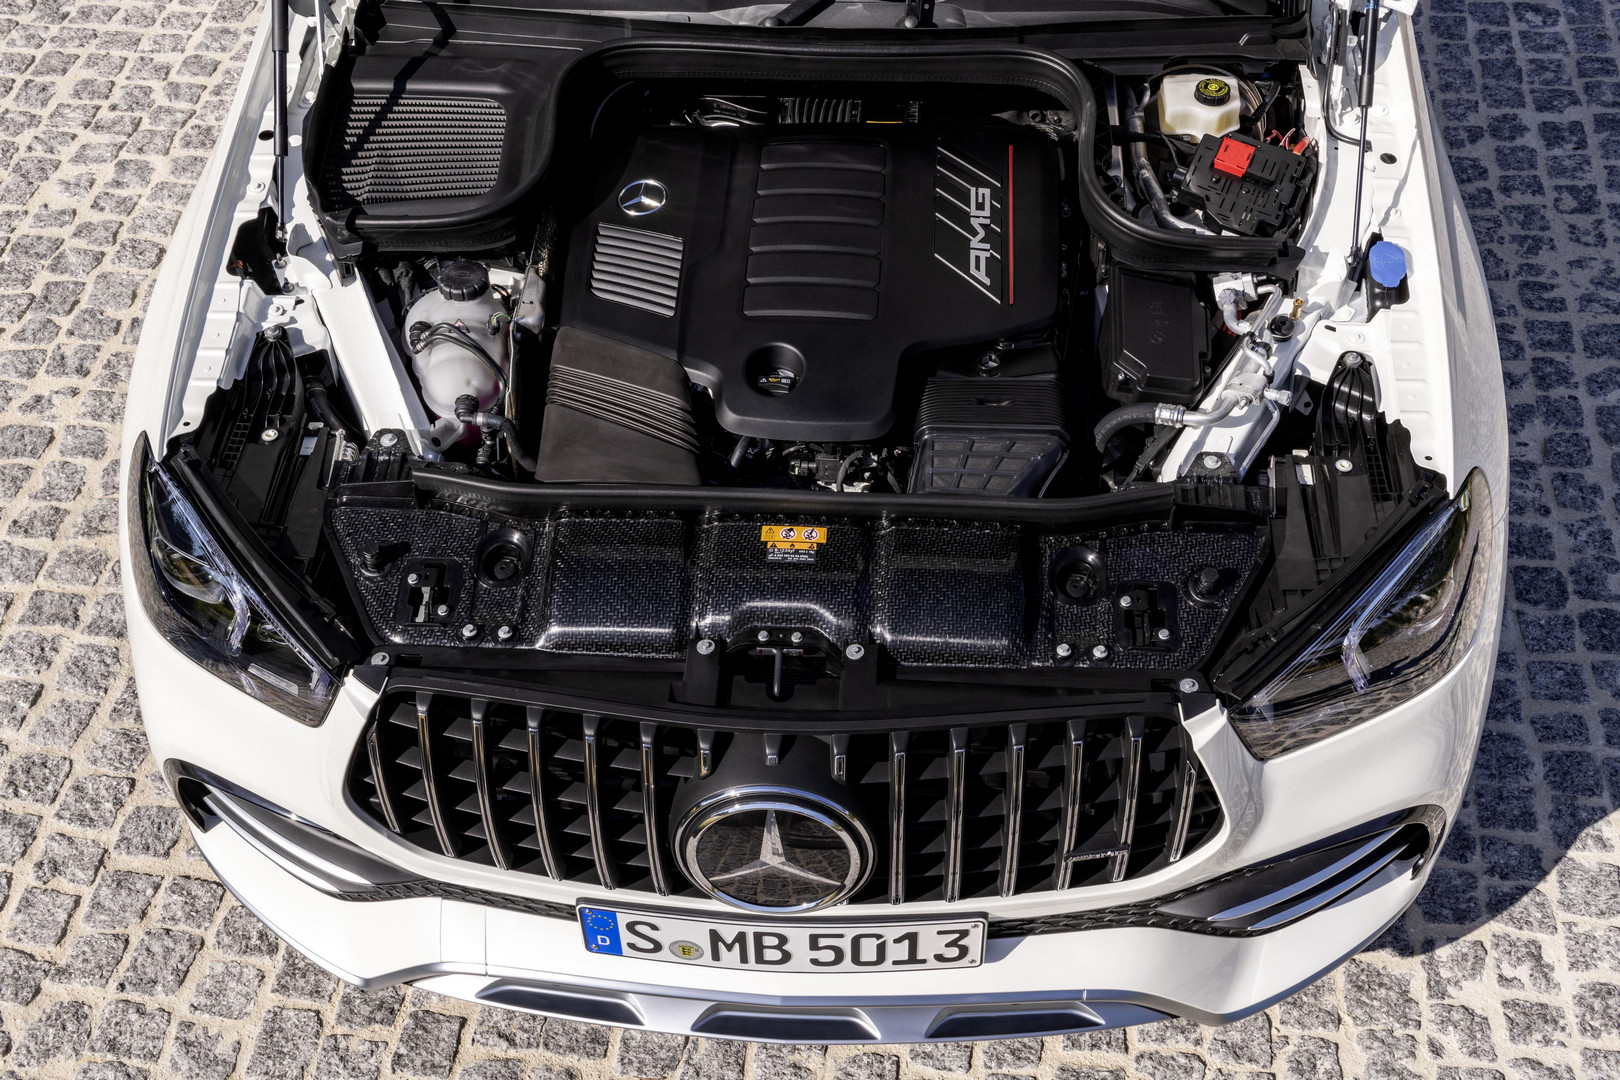 Mercedes-AMG GLE 53 Coupe Engine